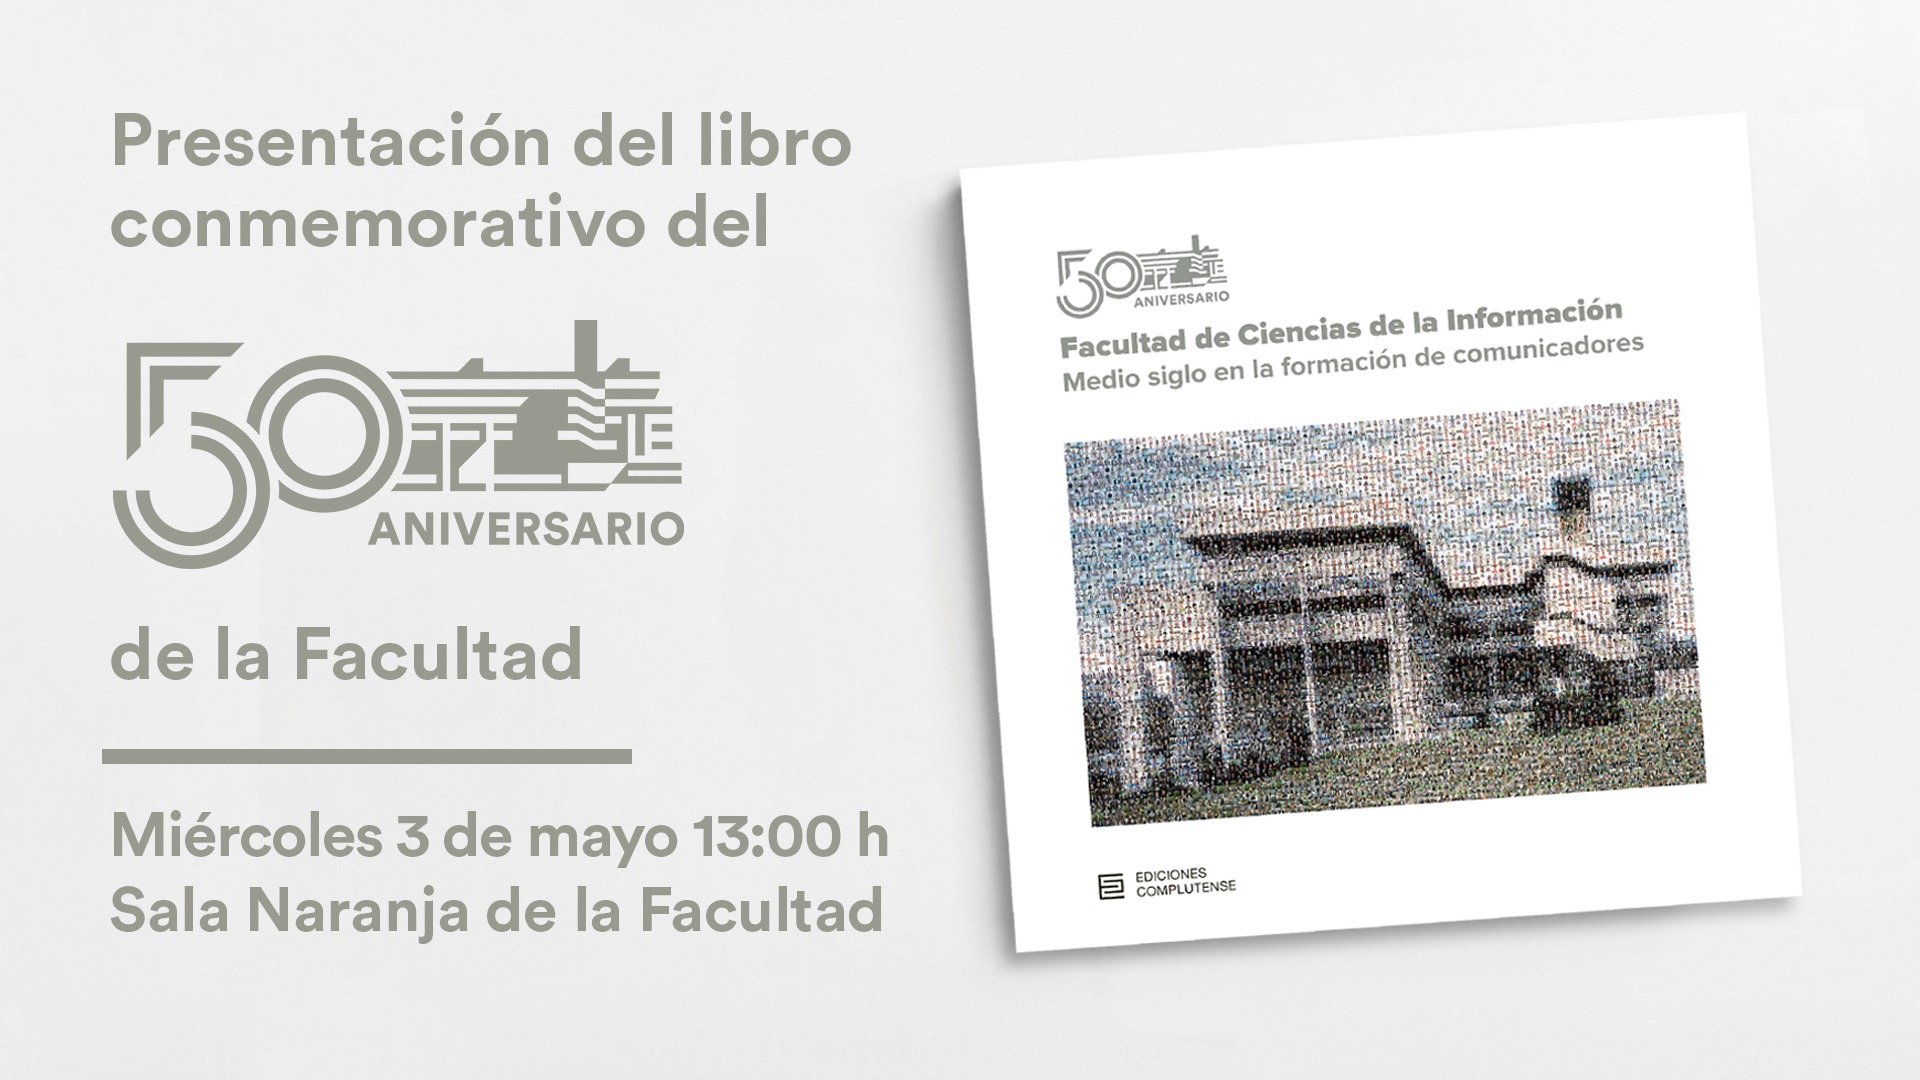 Presentación del libro conmemorativo del 50º aniversario de la Facultad, medio siglo en la formación de comunicadores - 2